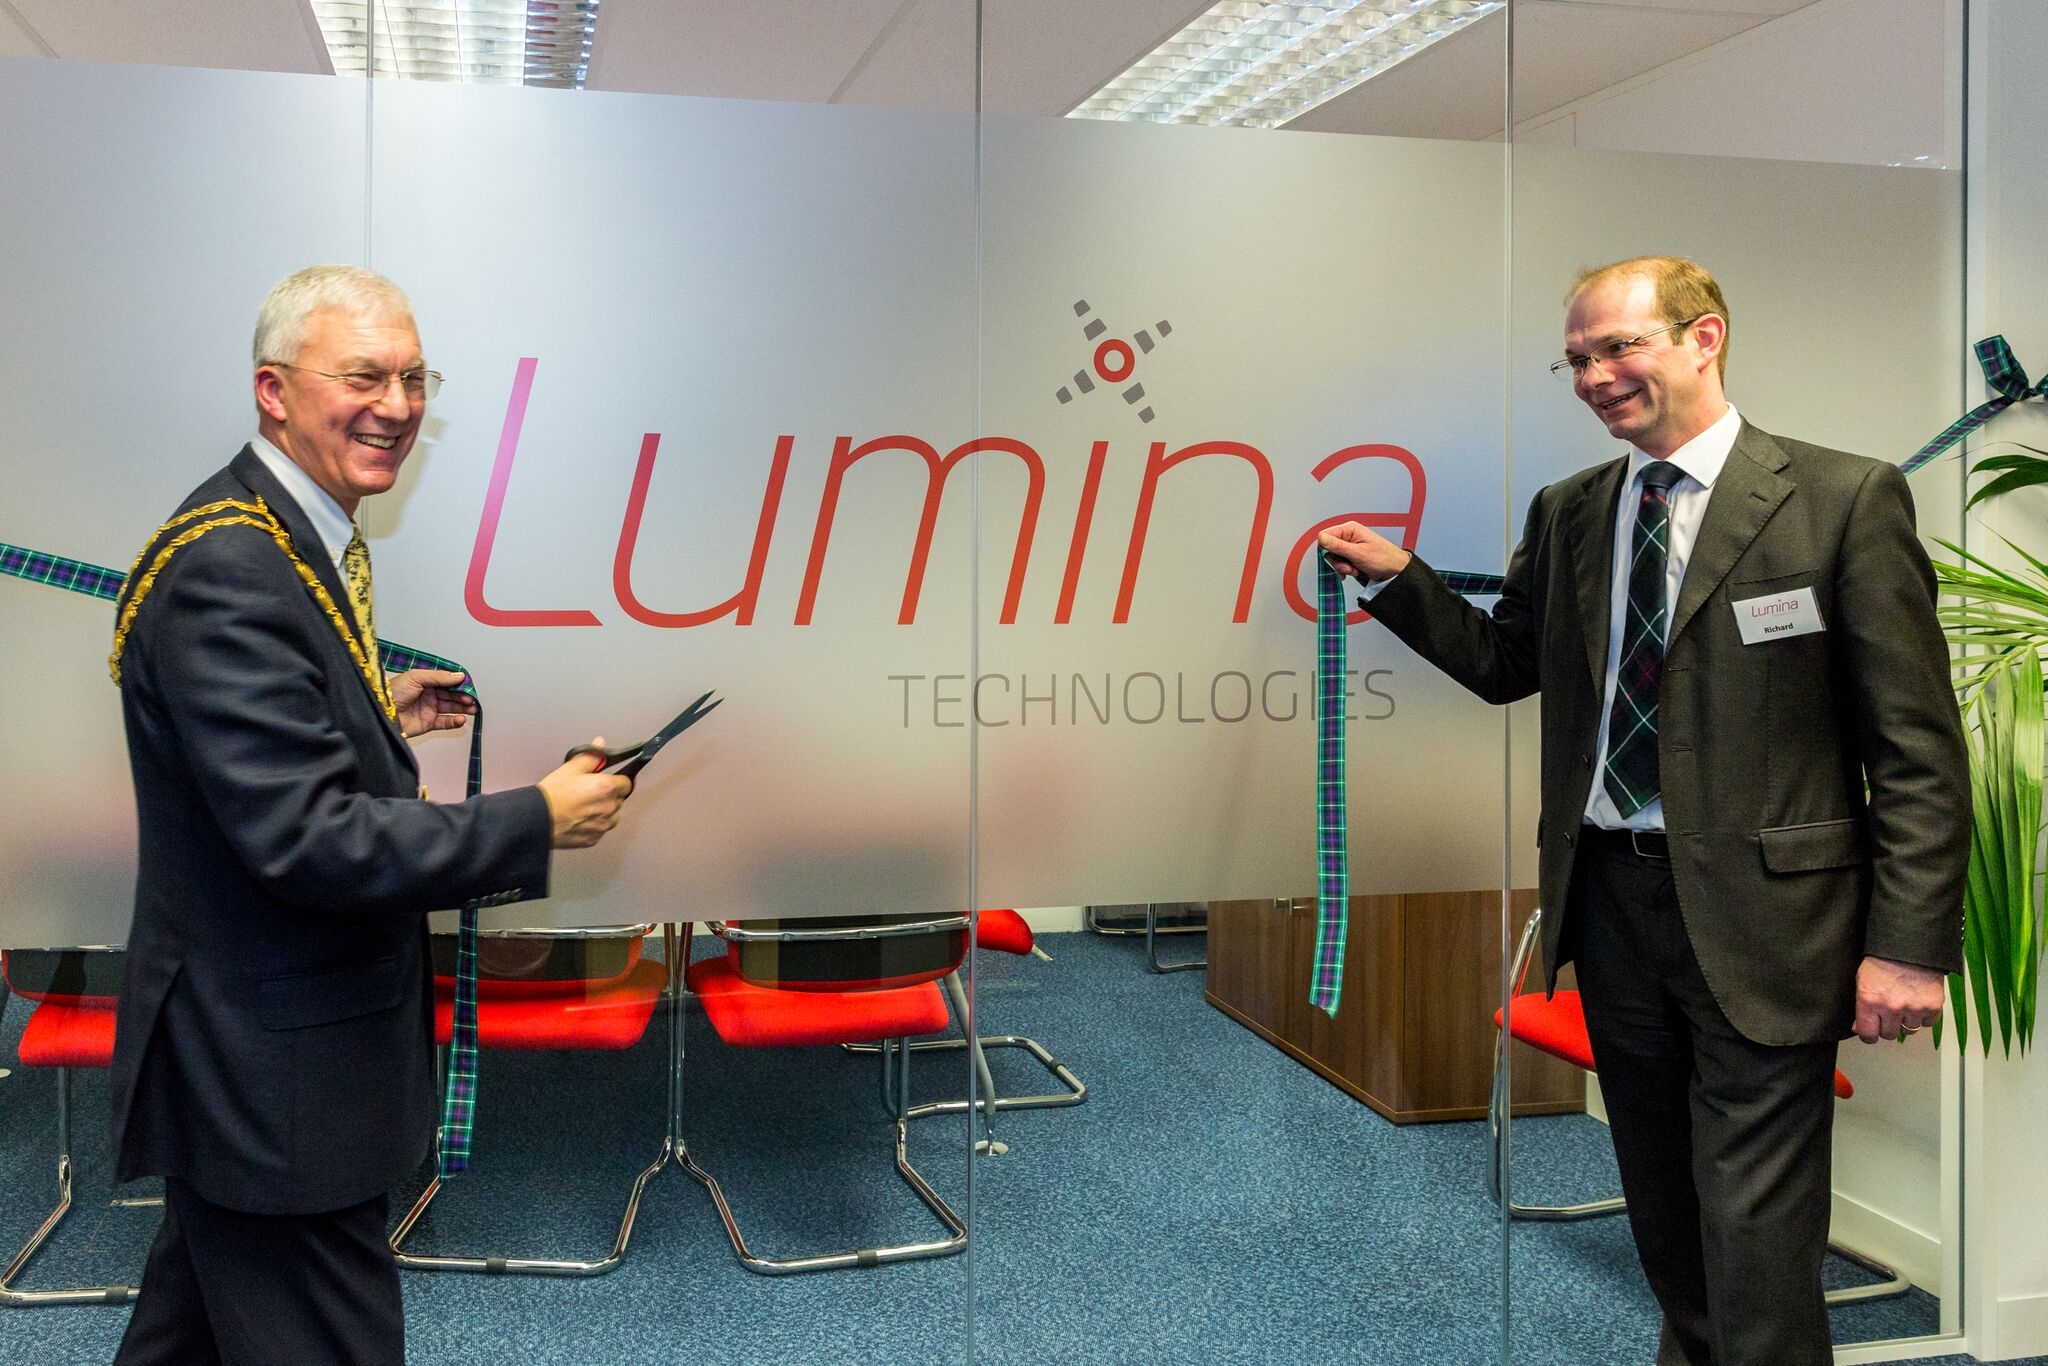 Lumina Technologies is the toast of Burns Night